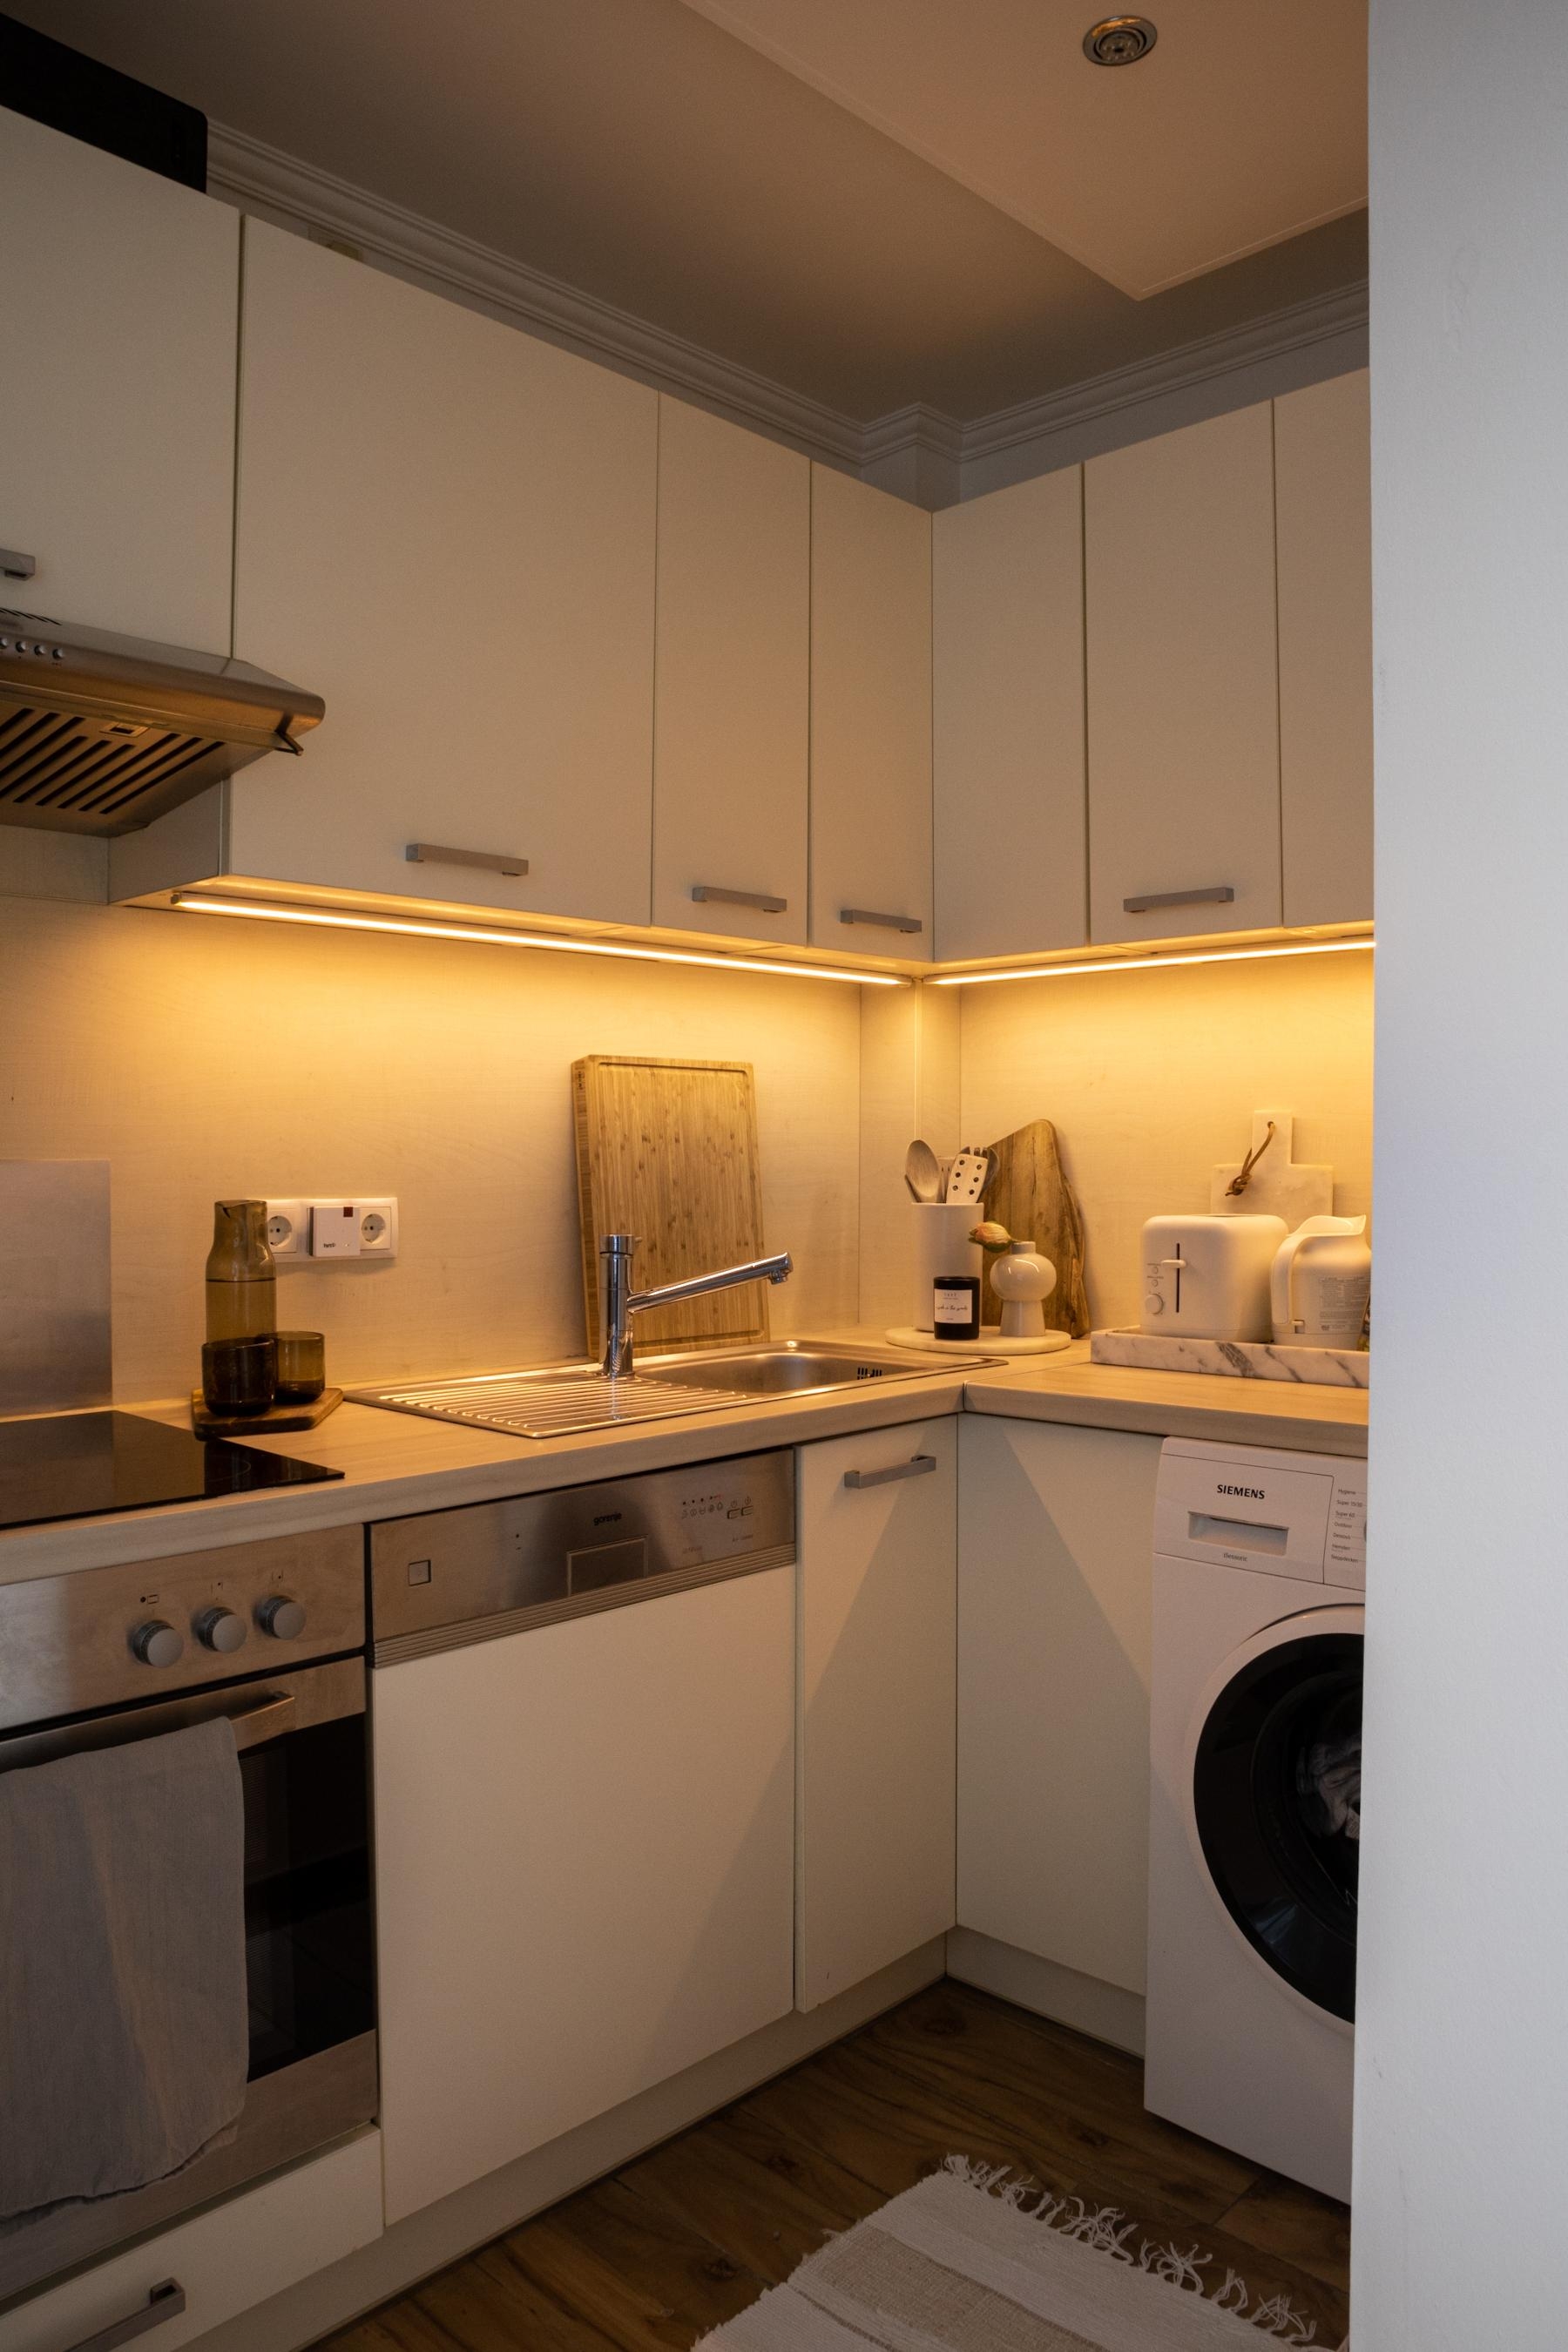 #küche #kitchen #kleinaberfein #minimalistisch #beige